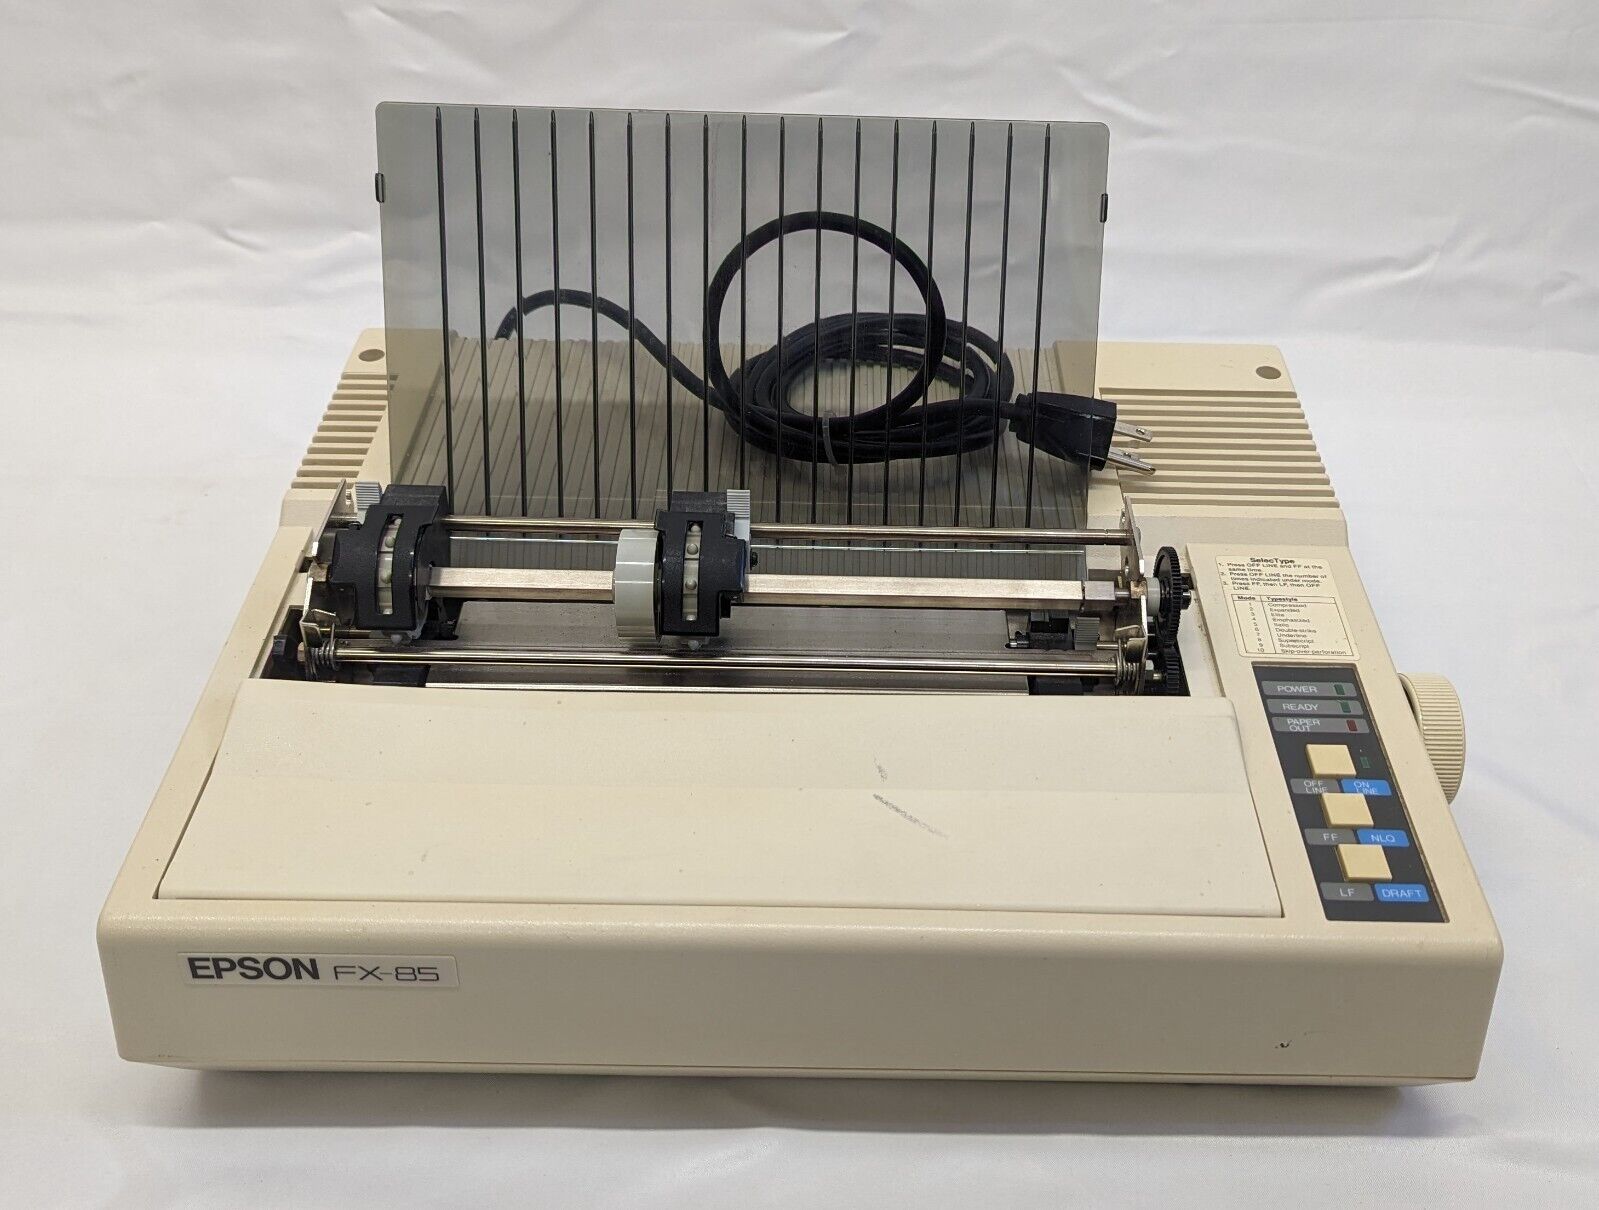 Rare Vintage Epson FX-85 Dot Matrix Printer